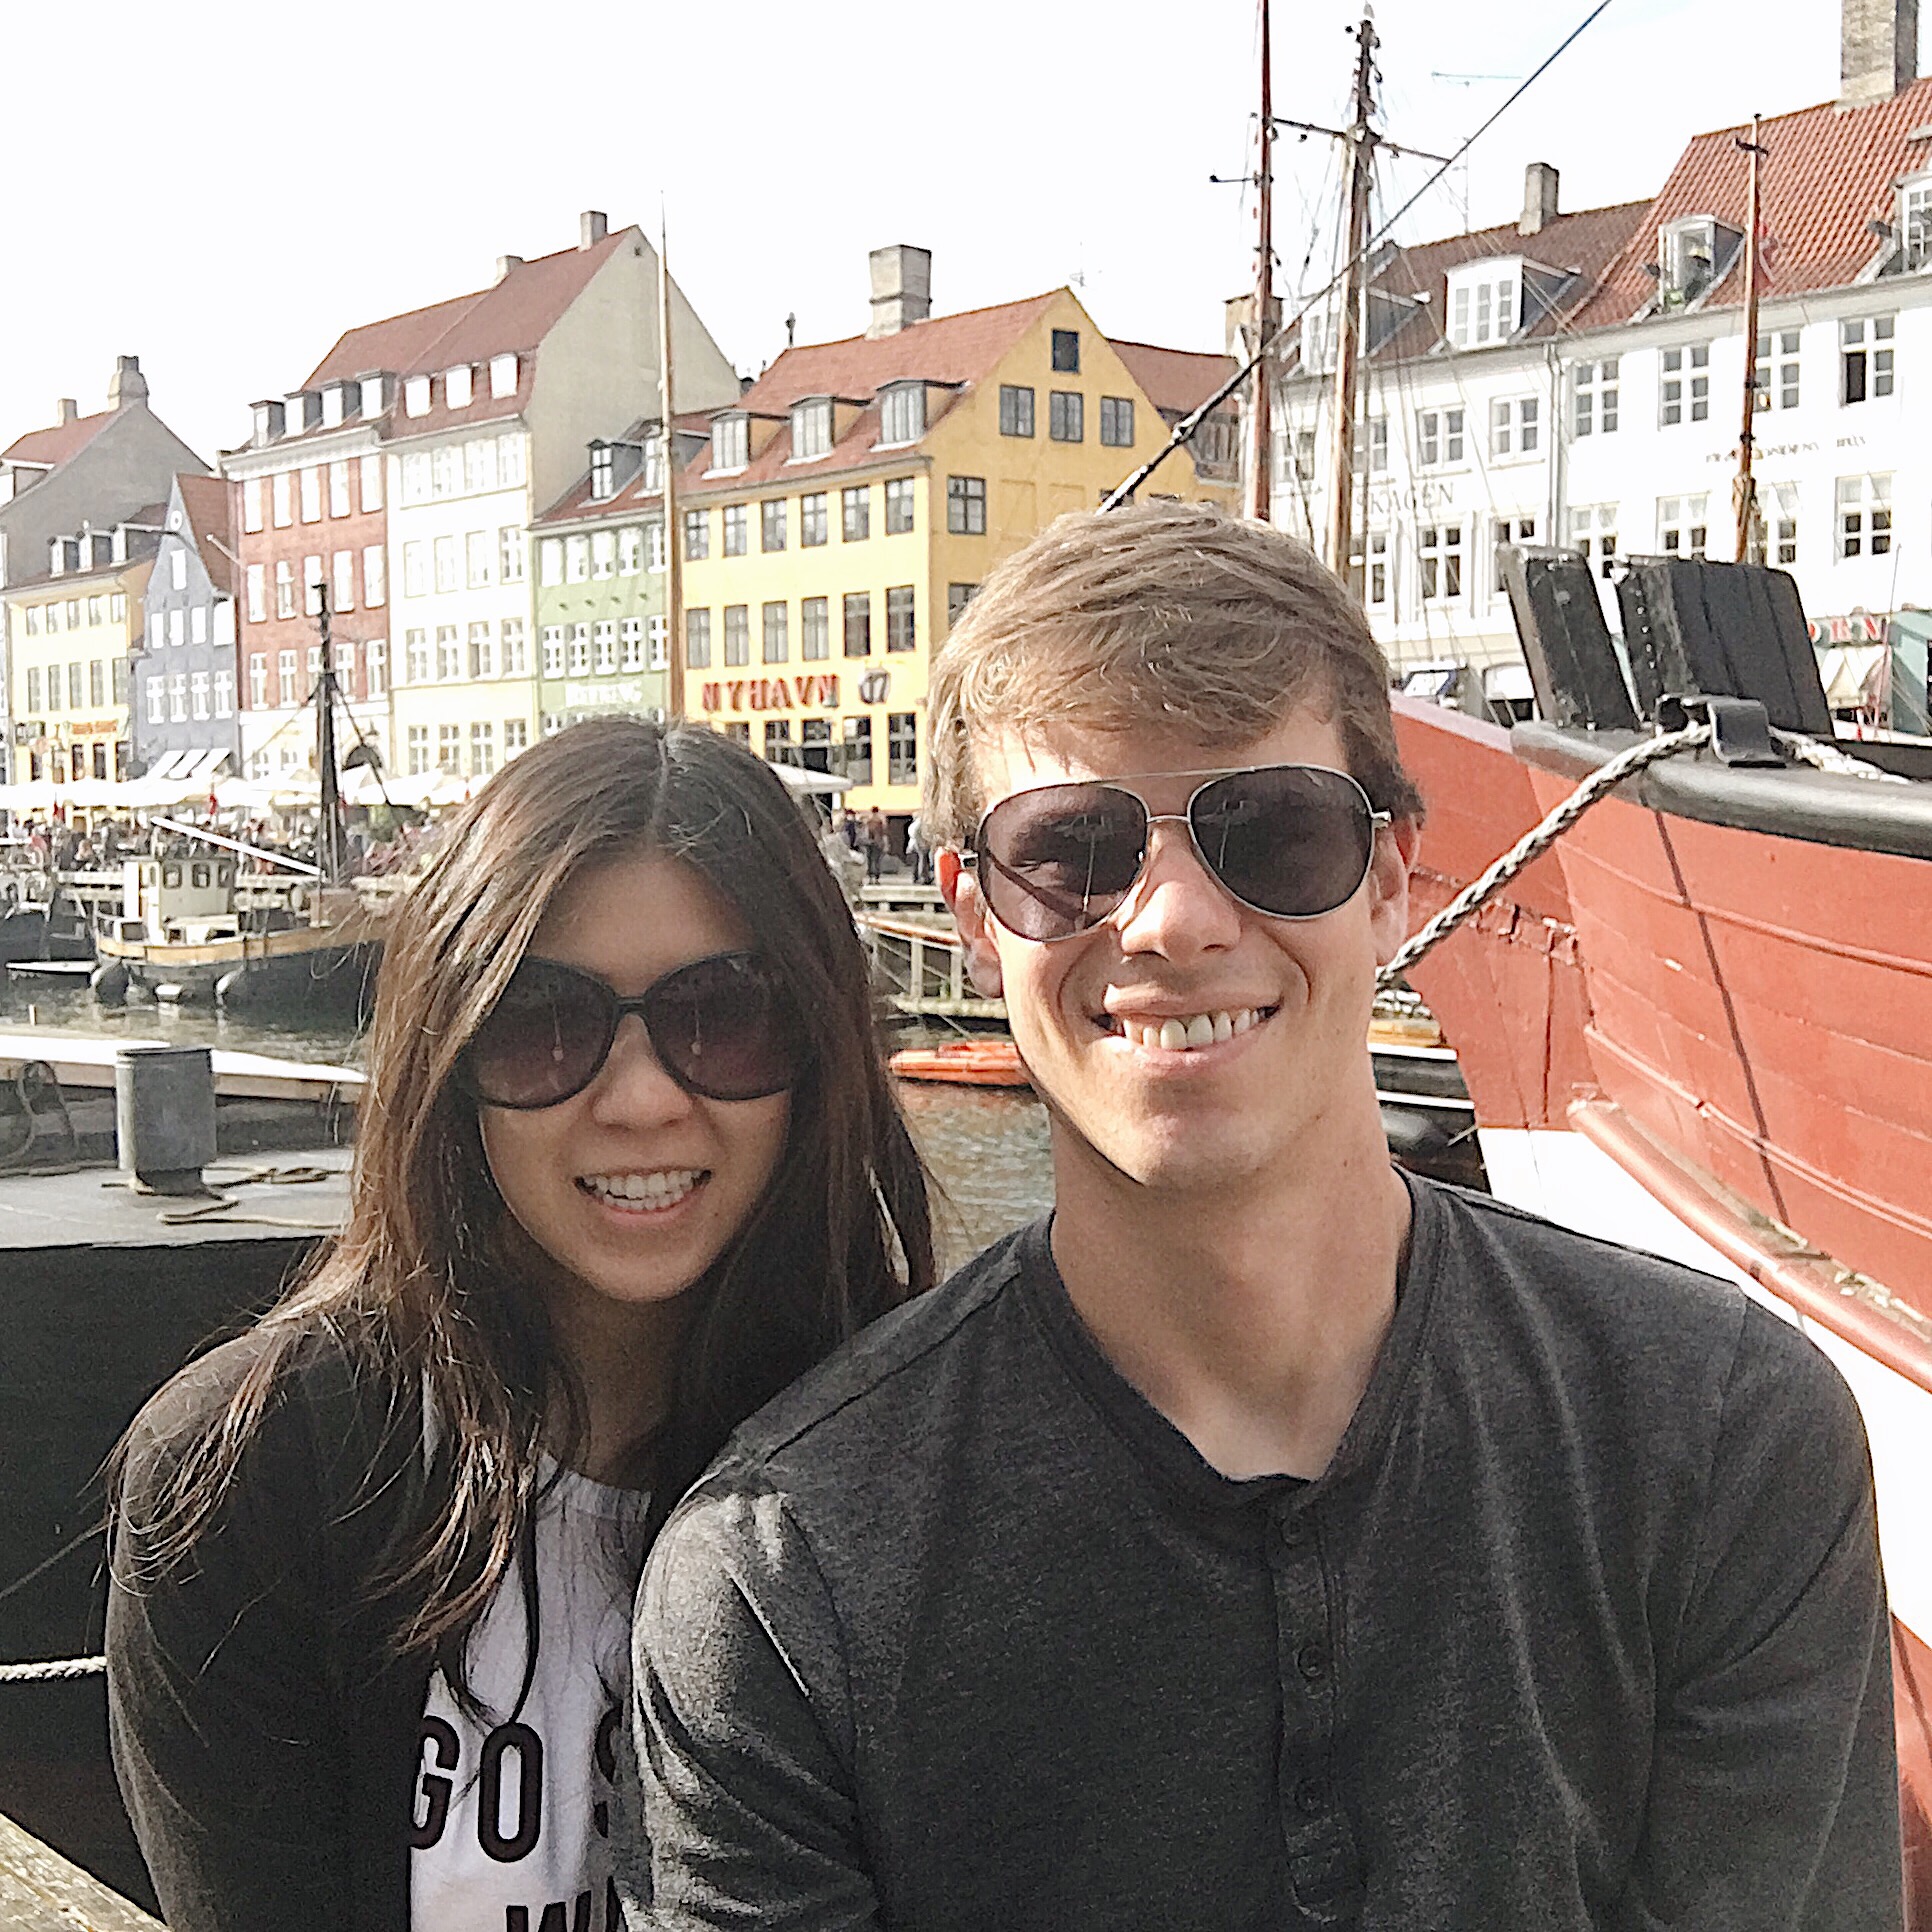 Selfie at Nyhavn Copenhagen